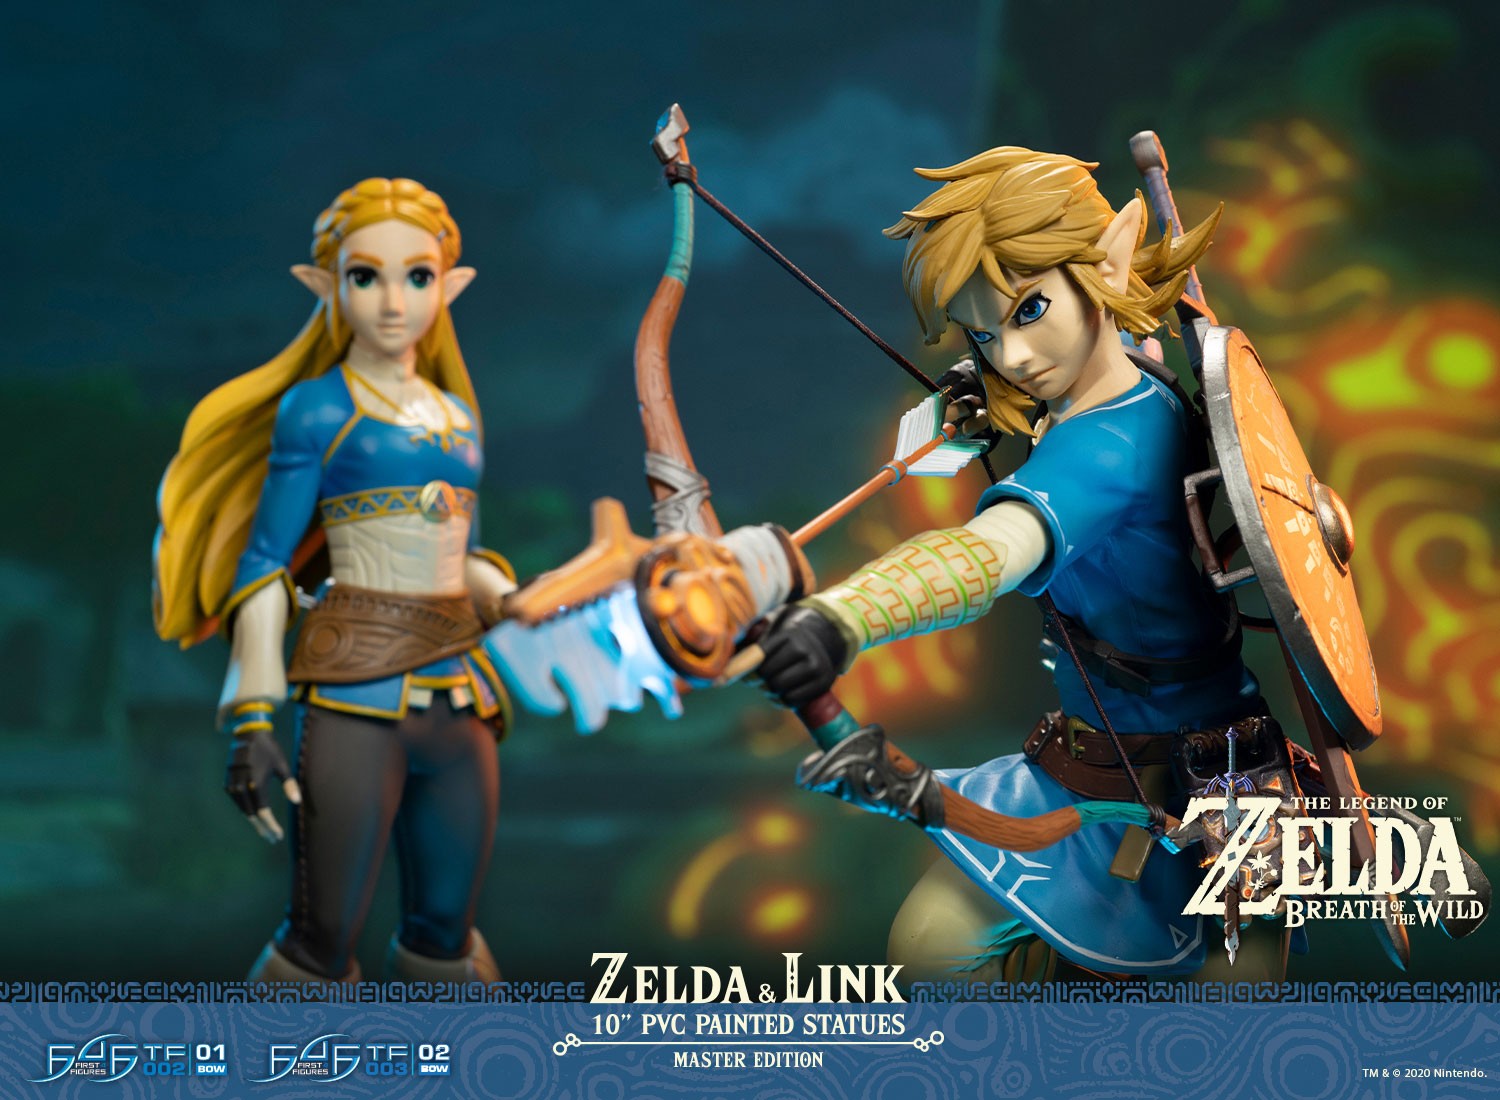 The Legend of Zelda Breath of the Wild Zelda Action Figure